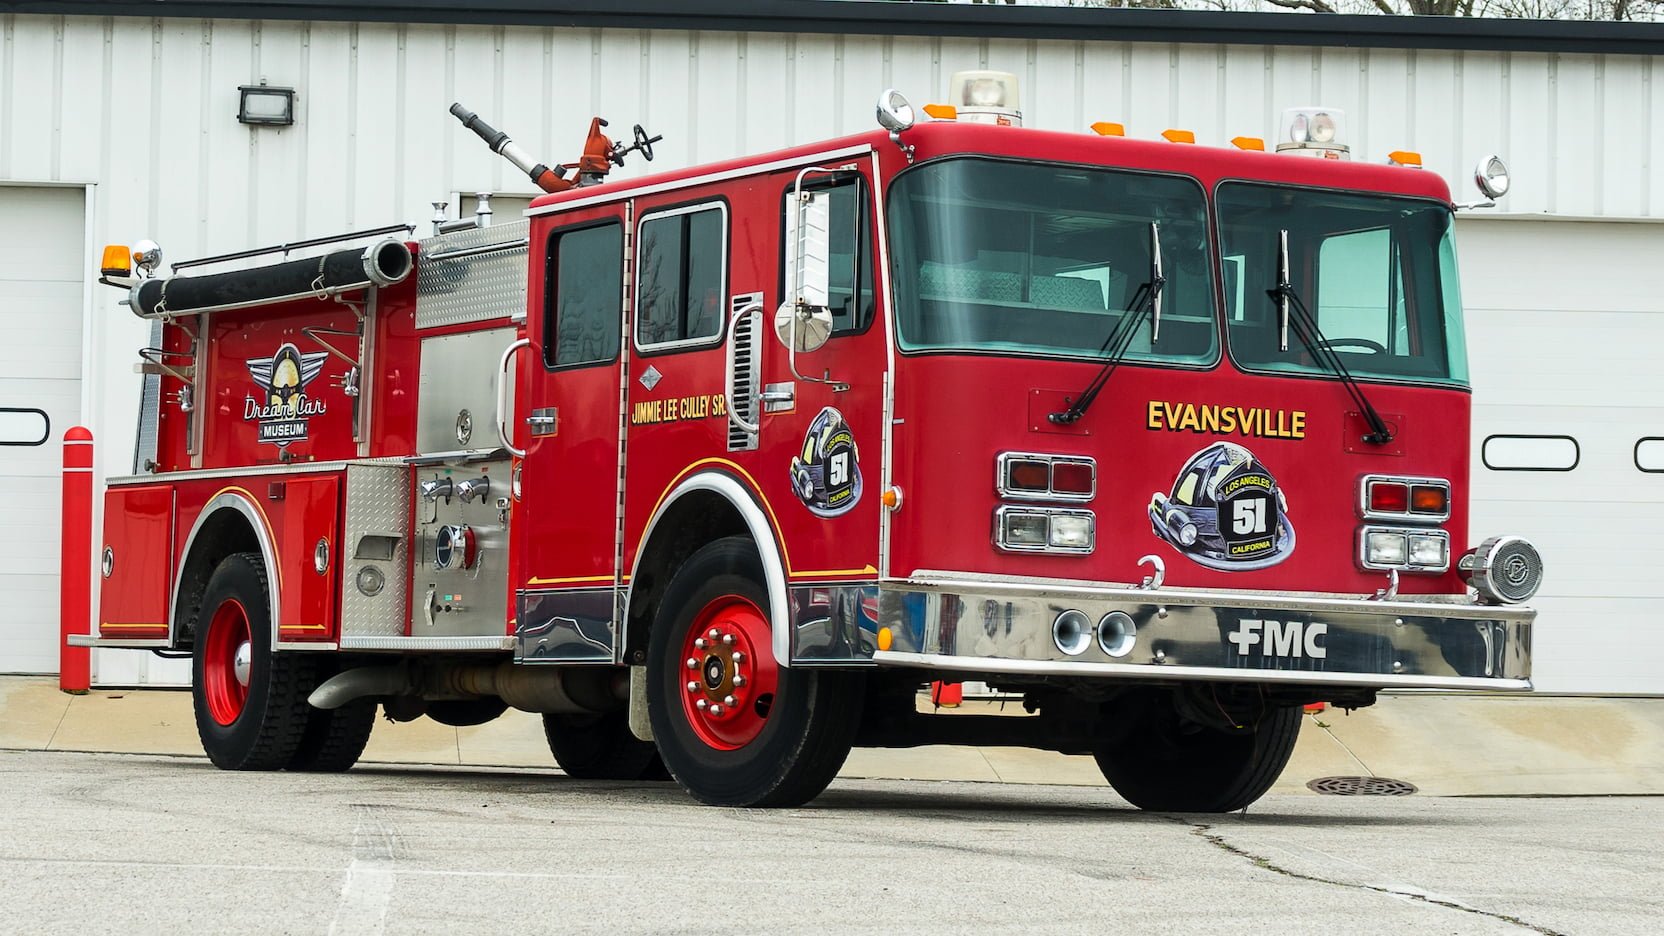 Ар пожарный автомобиль. Машина "Fire Truck" пожарная, 49450. Fire Rescue пожарная машина. Spartan Fire пожарные машины. Автомобиль пожарно-спасательный АПС.